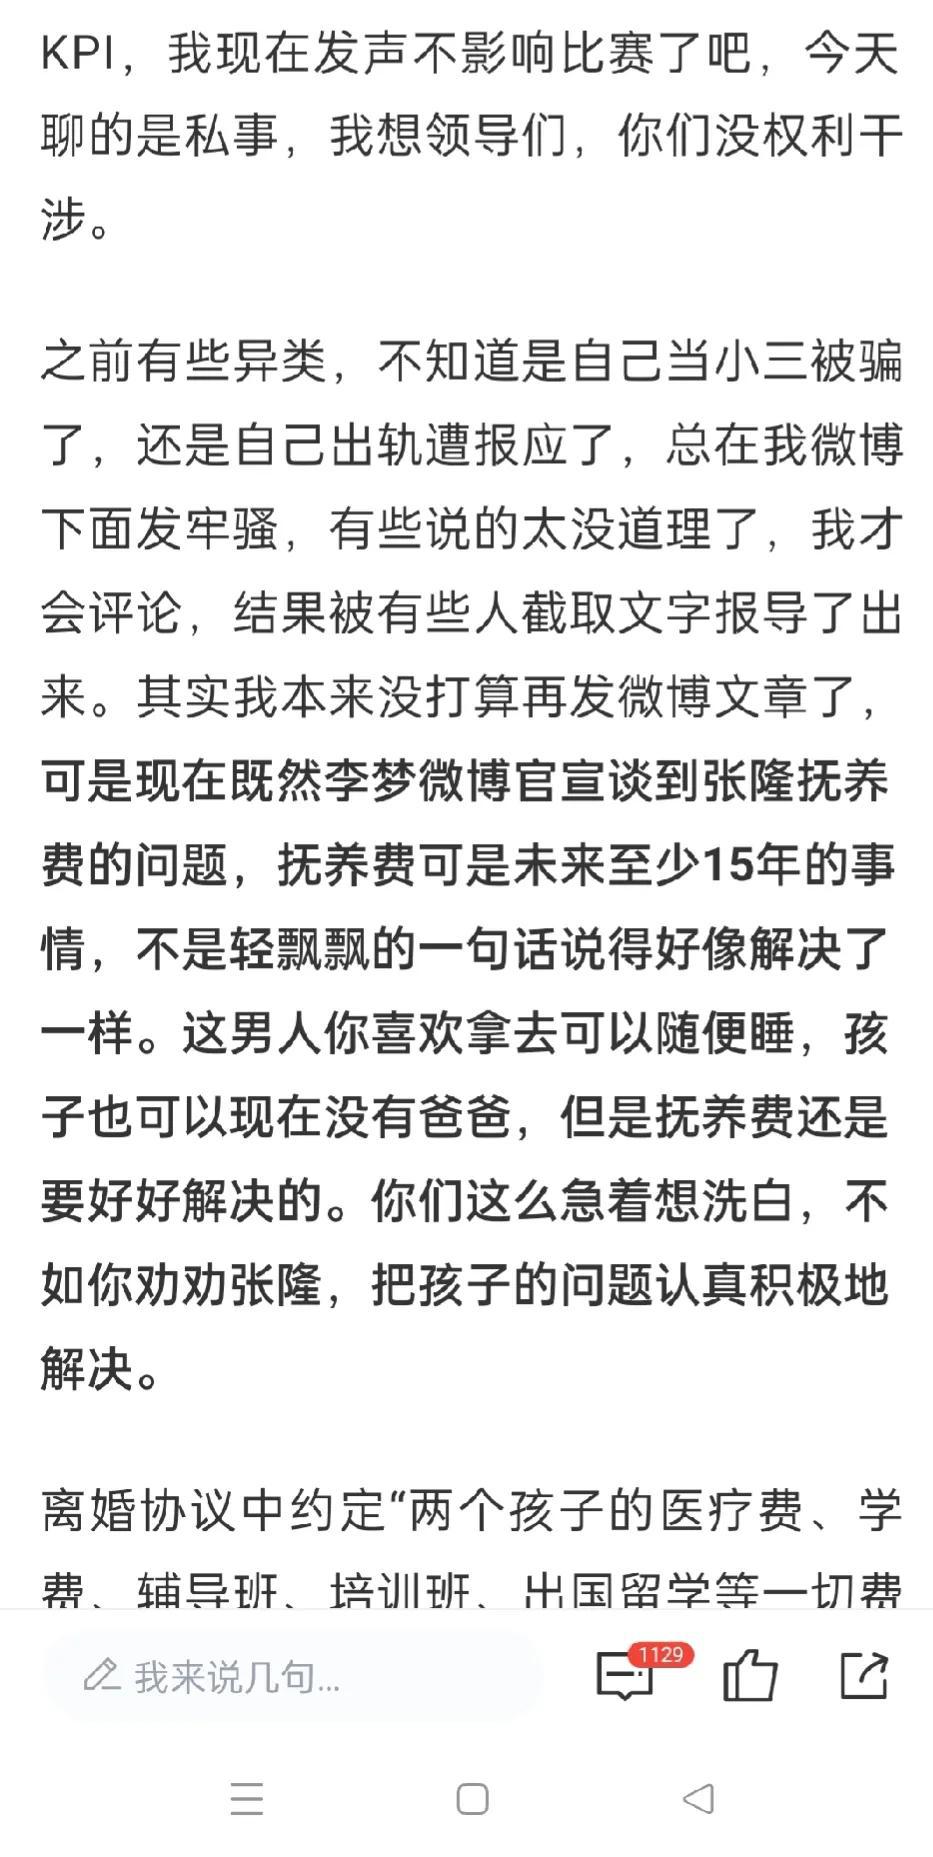 对于张隆前期炮轰李梦为张隆未给抚养费辩护事件，我有三个疑问！

1、张隆迫于压力(2)